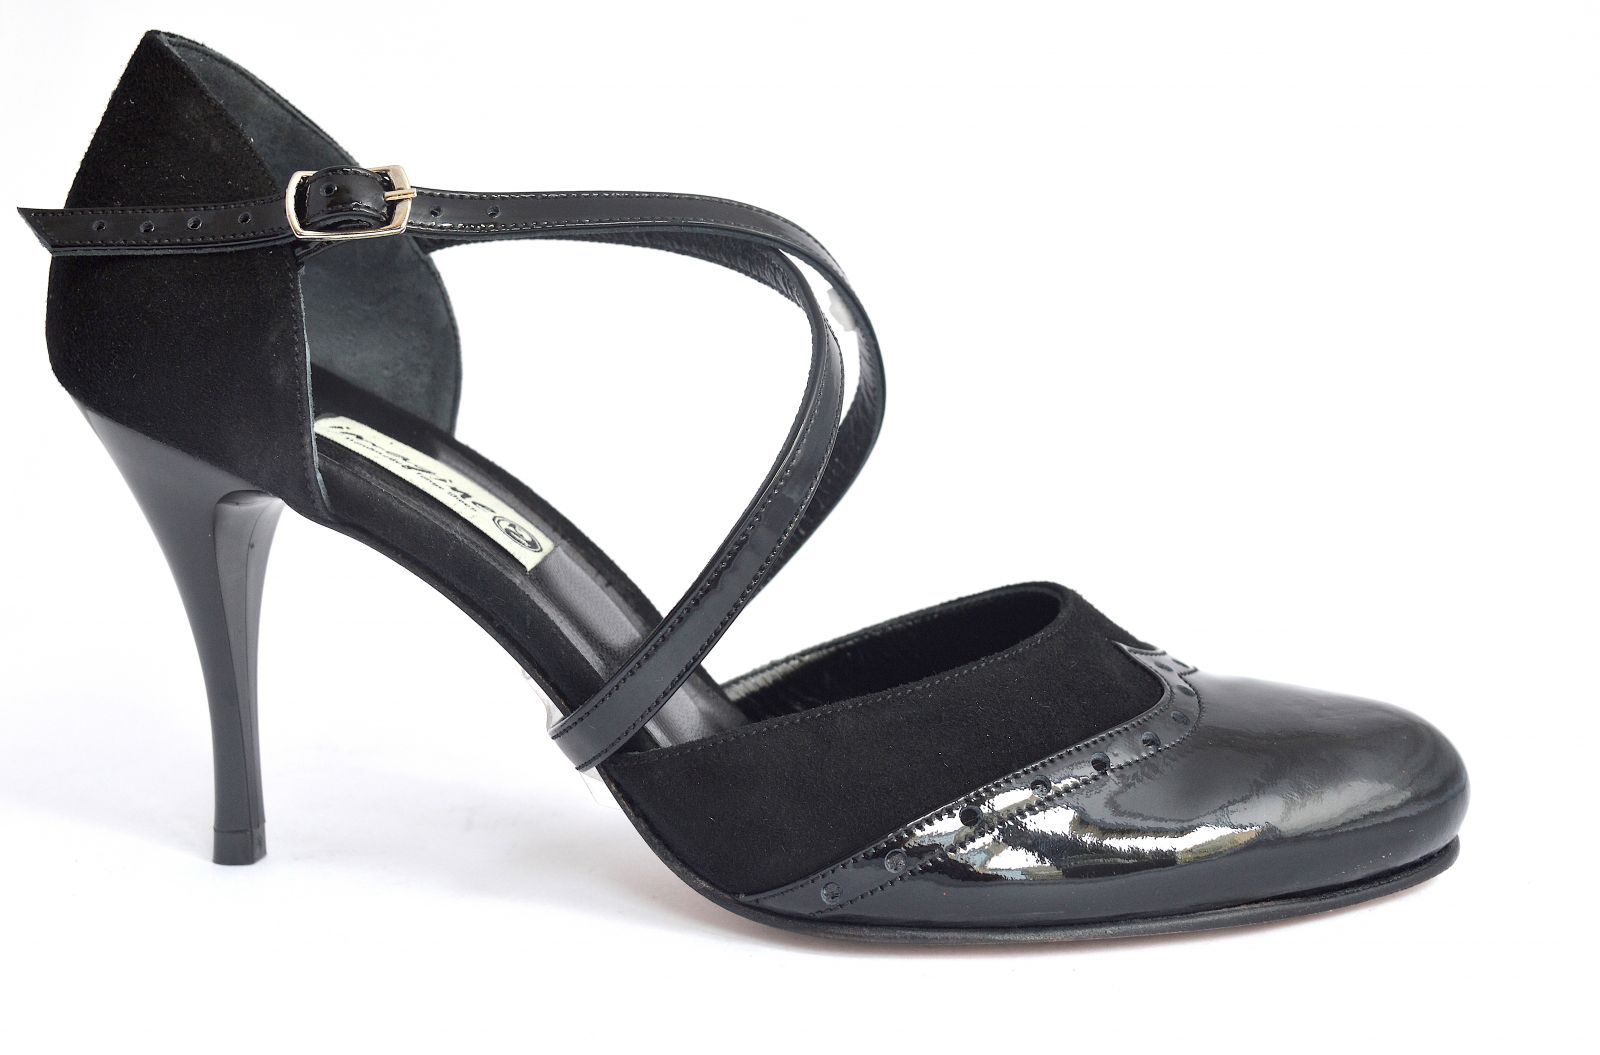 Γυναικείο παπούτσι χορού tango closed toe από μαύρο δέρμα λουστρίνι και μαύρο σουέτ